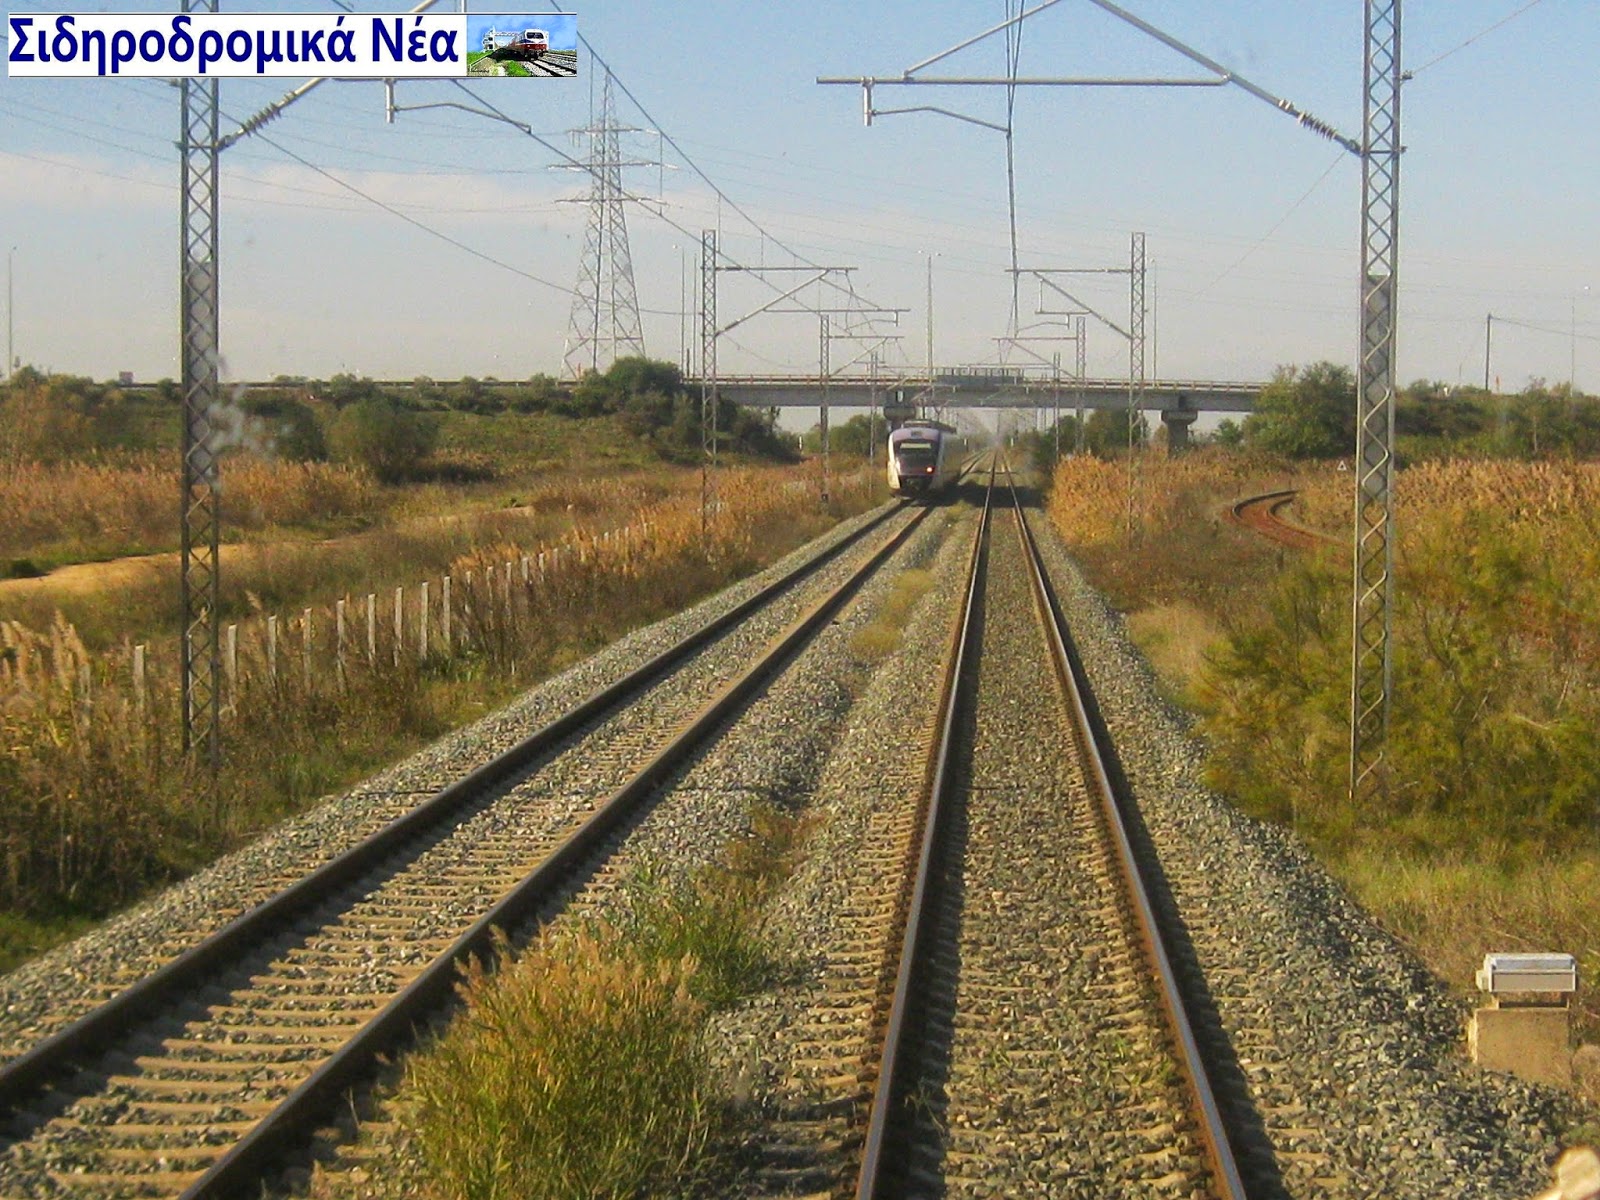 Η Περιφέρεια Ηπείρου στο νέο ΕΣΠΑ μεταξύ των έργων υποδομών προτείνει και την σιδηροδρομική σύνδεση της περιοχής. - Φωτογραφία 1